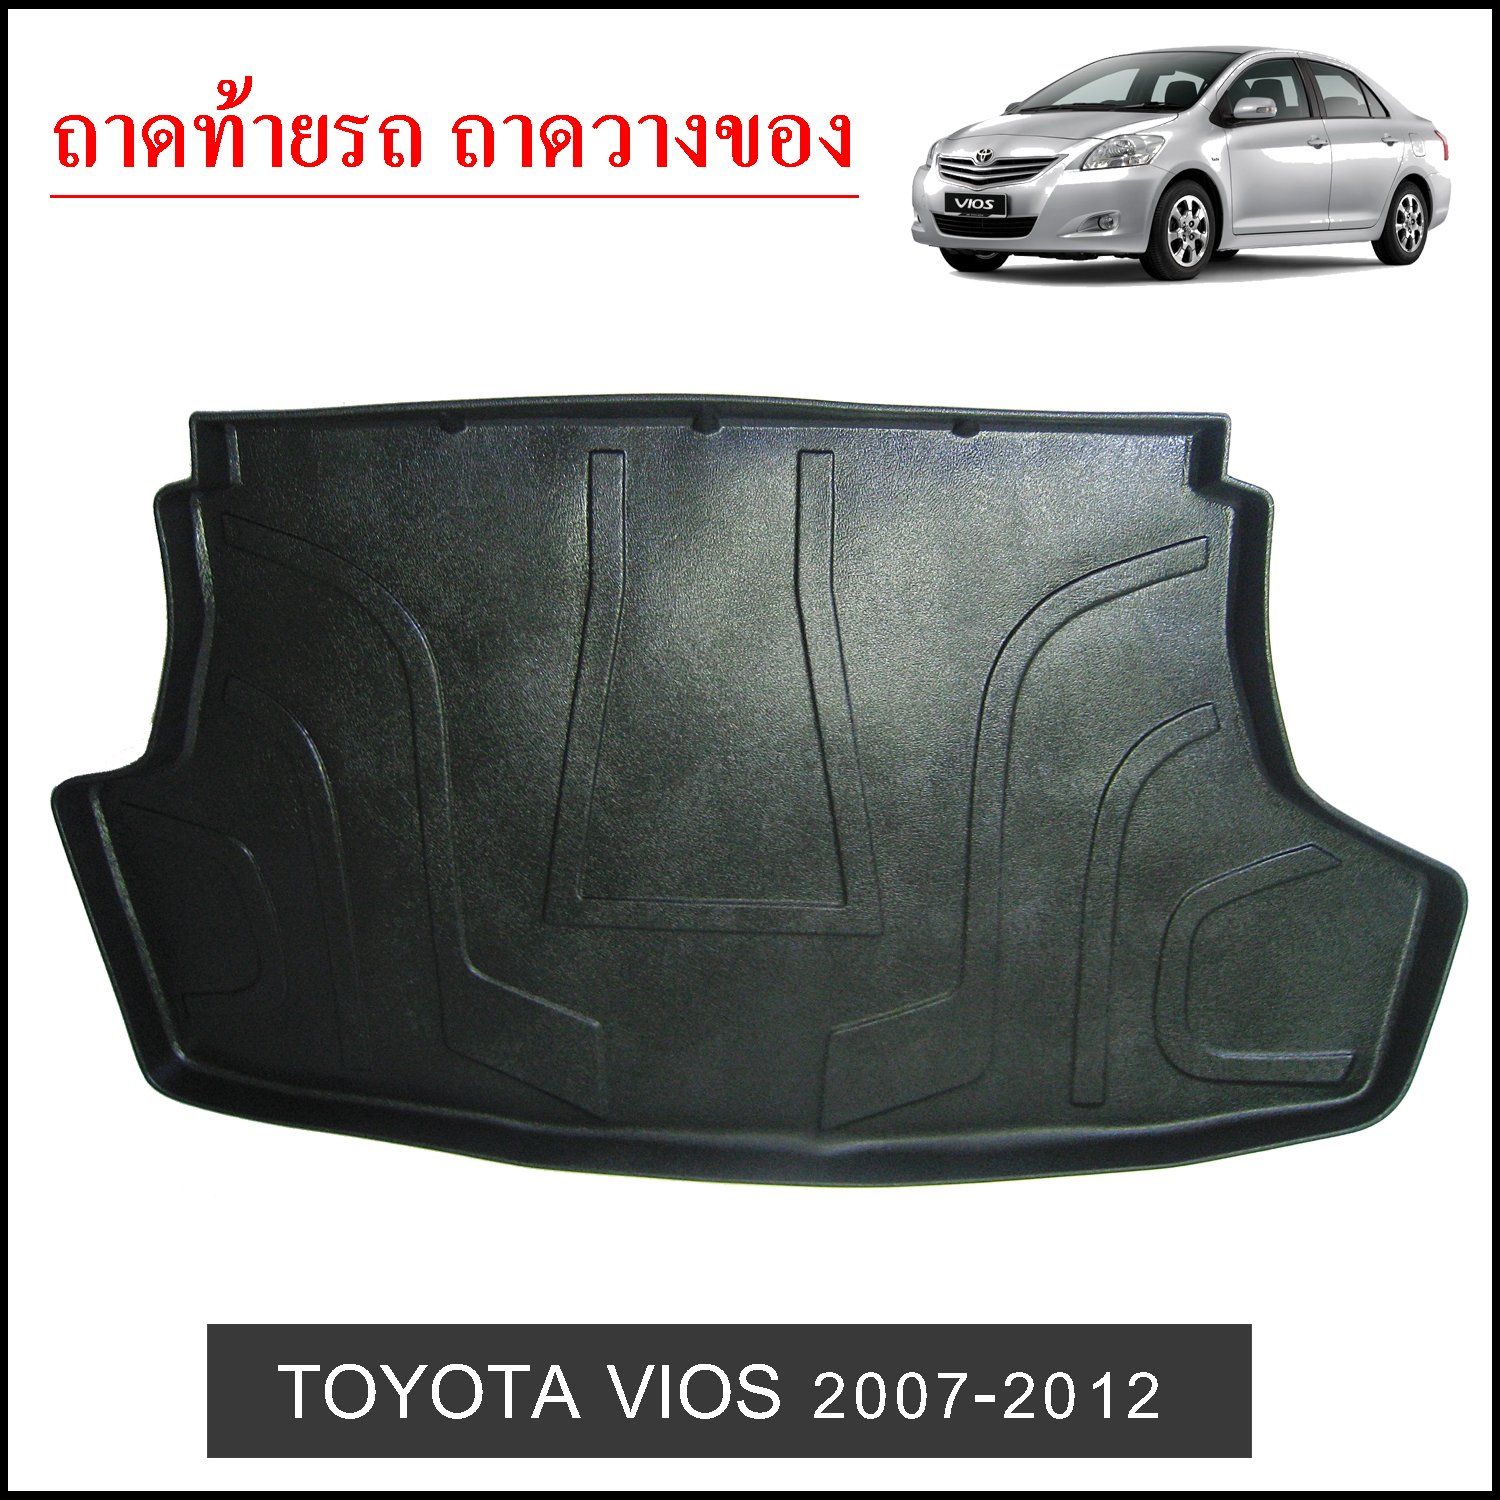 ถาดท้ายวางของ Toyota Vios 2007-2012